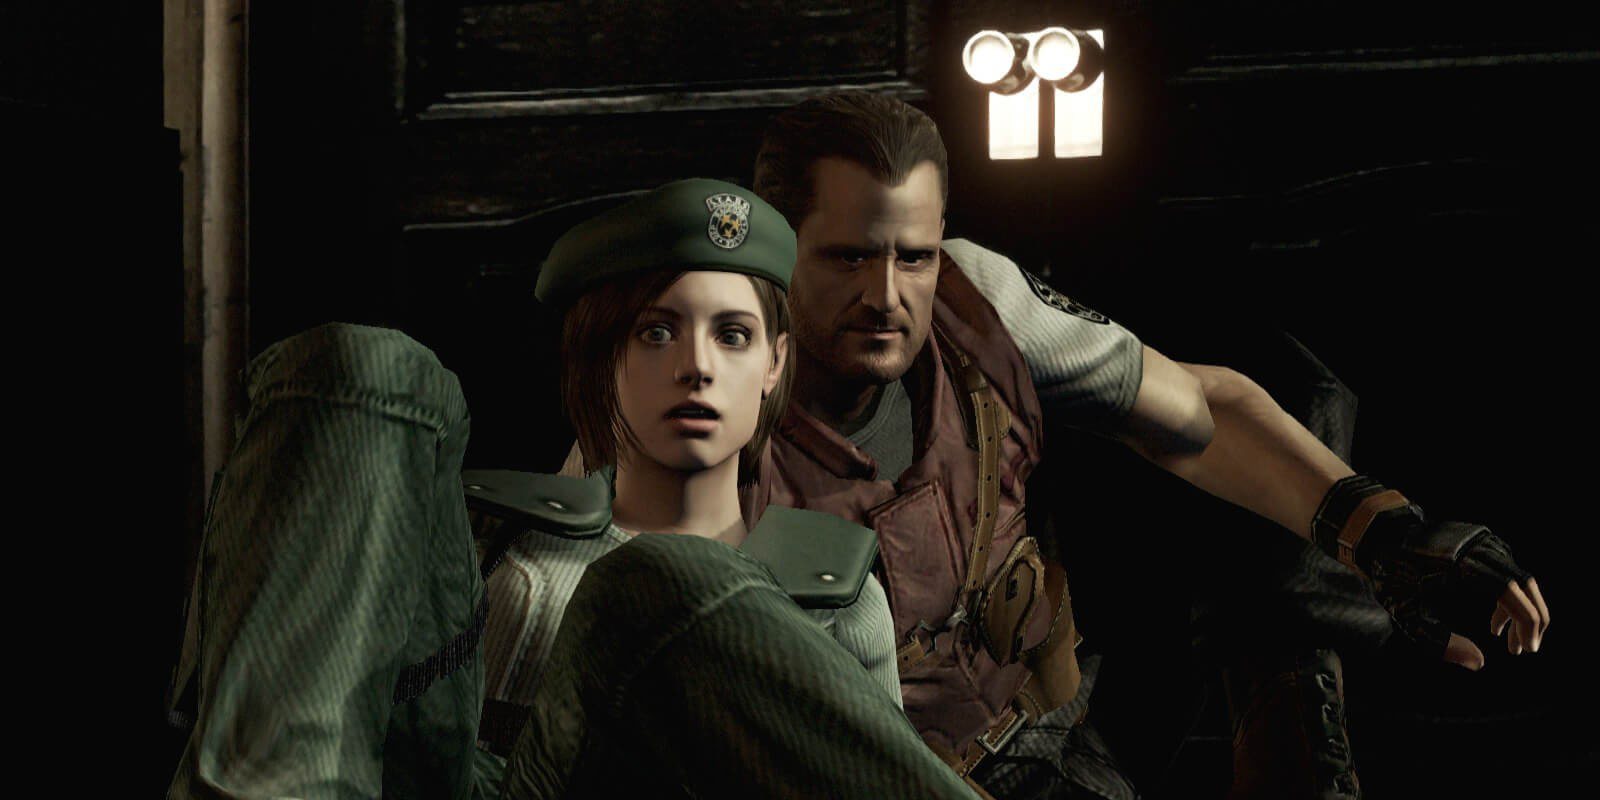 El precio de un buen port: 'Resident Evil' y Nintendo Switch